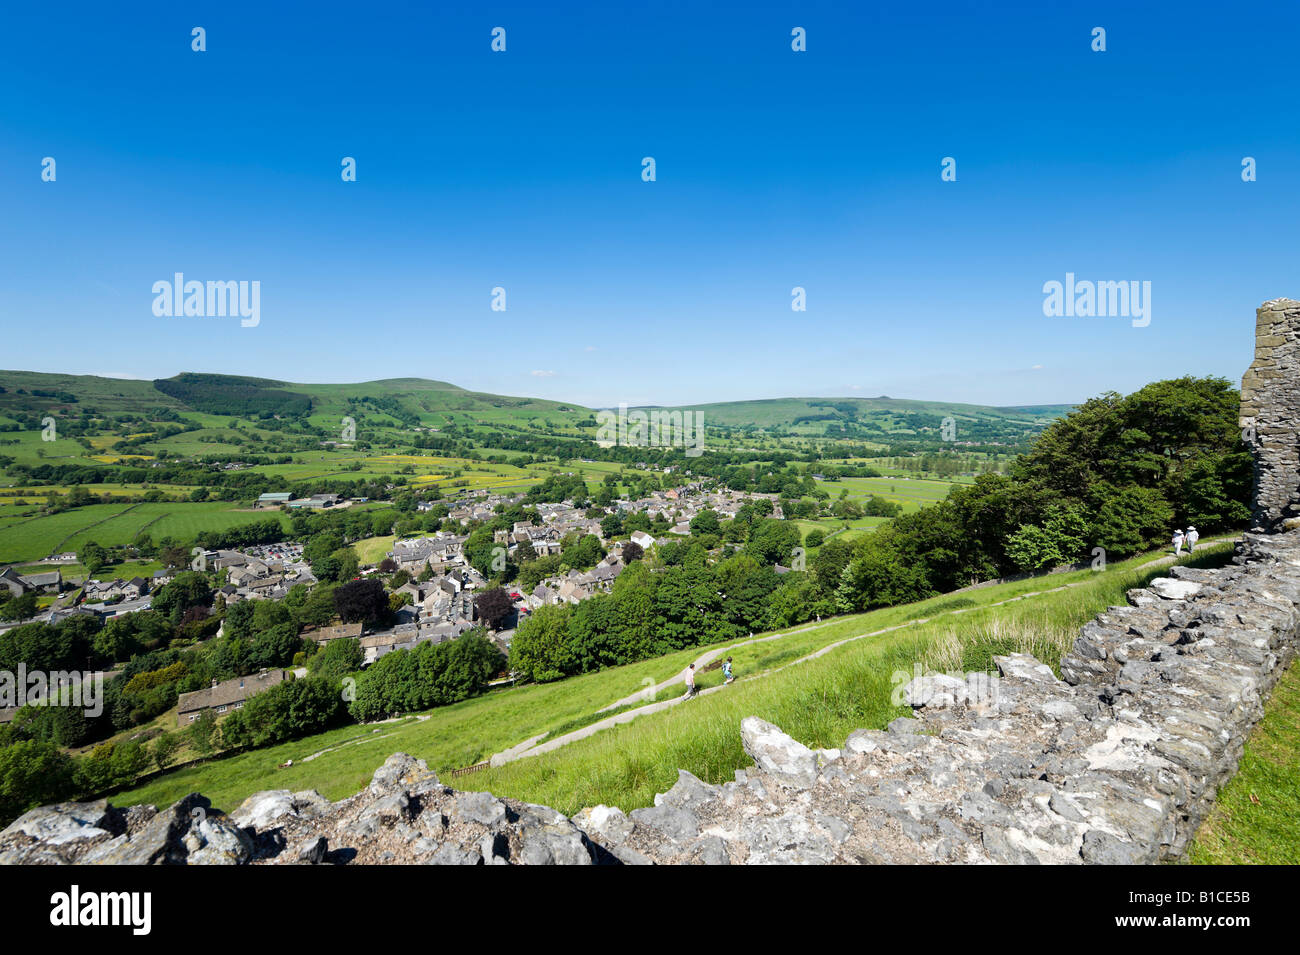 Blick von den Mauern des Schlosses Peveril über Dorf Castleton, Peak District, Derbyshire, England, Vereinigtes Königreich Stockfoto